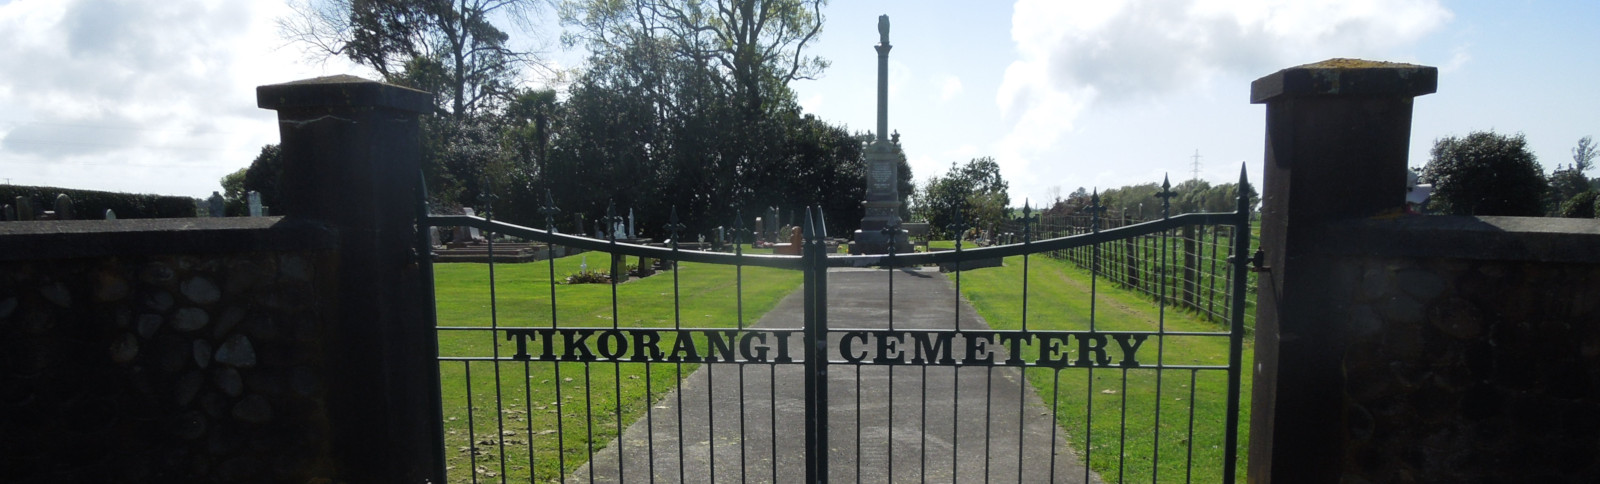 Tikorangi cemetery